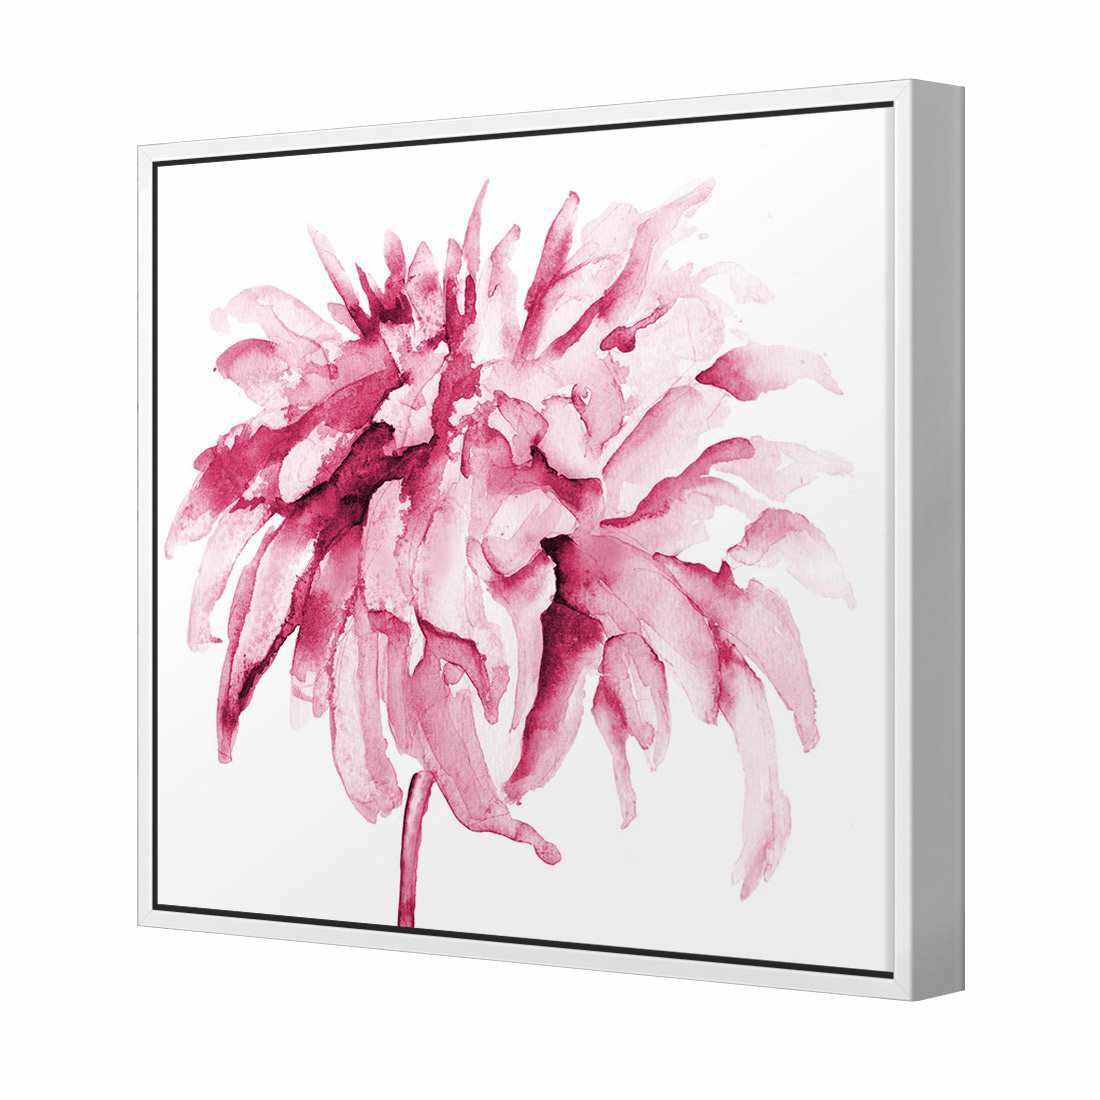 Fairy Floss, Pink Canvas Art-Canvas-Wall Art Designs-30x30cm-Canvas - White Frame-Wall Art Designs